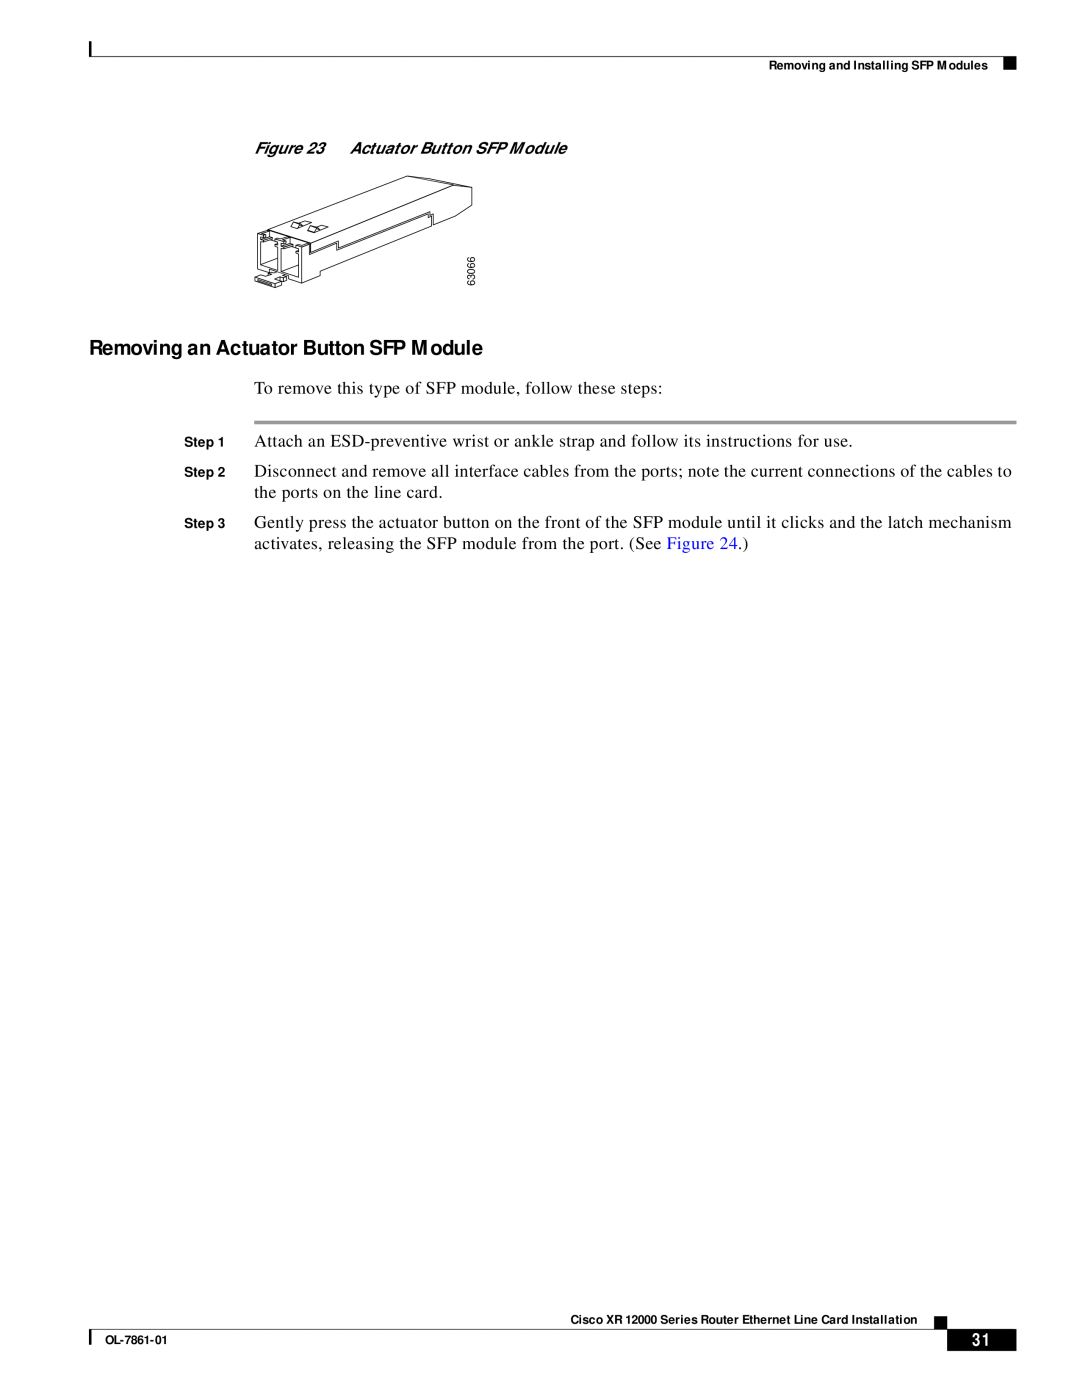 Cisco Systems OL-7861-01 manual Removing an Actuator Button SFP Module 